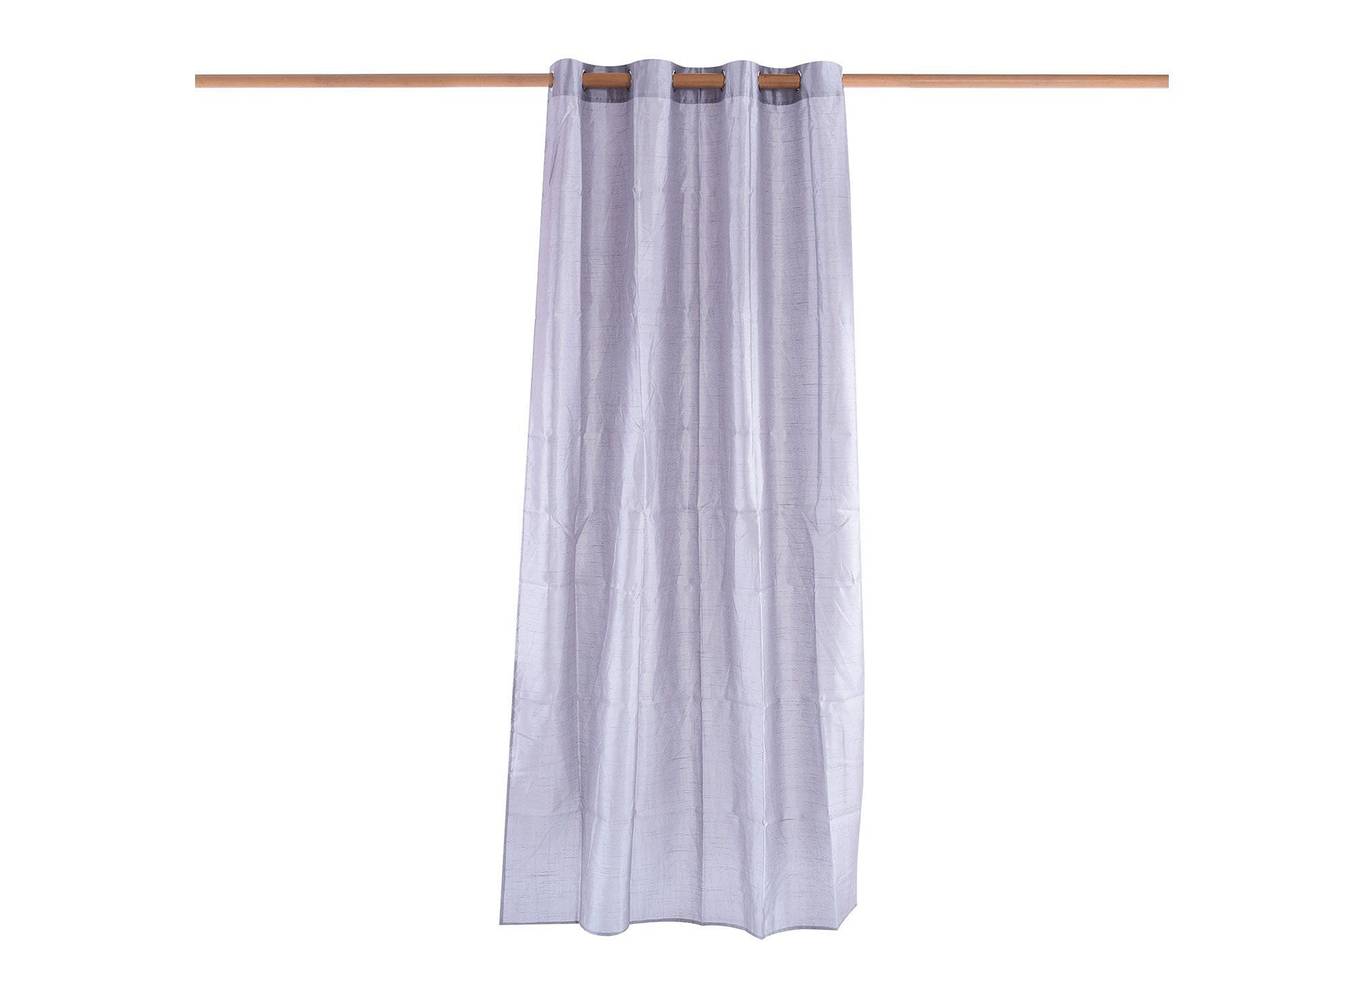 Dib cortina noruega gris (140 x 240 cm)